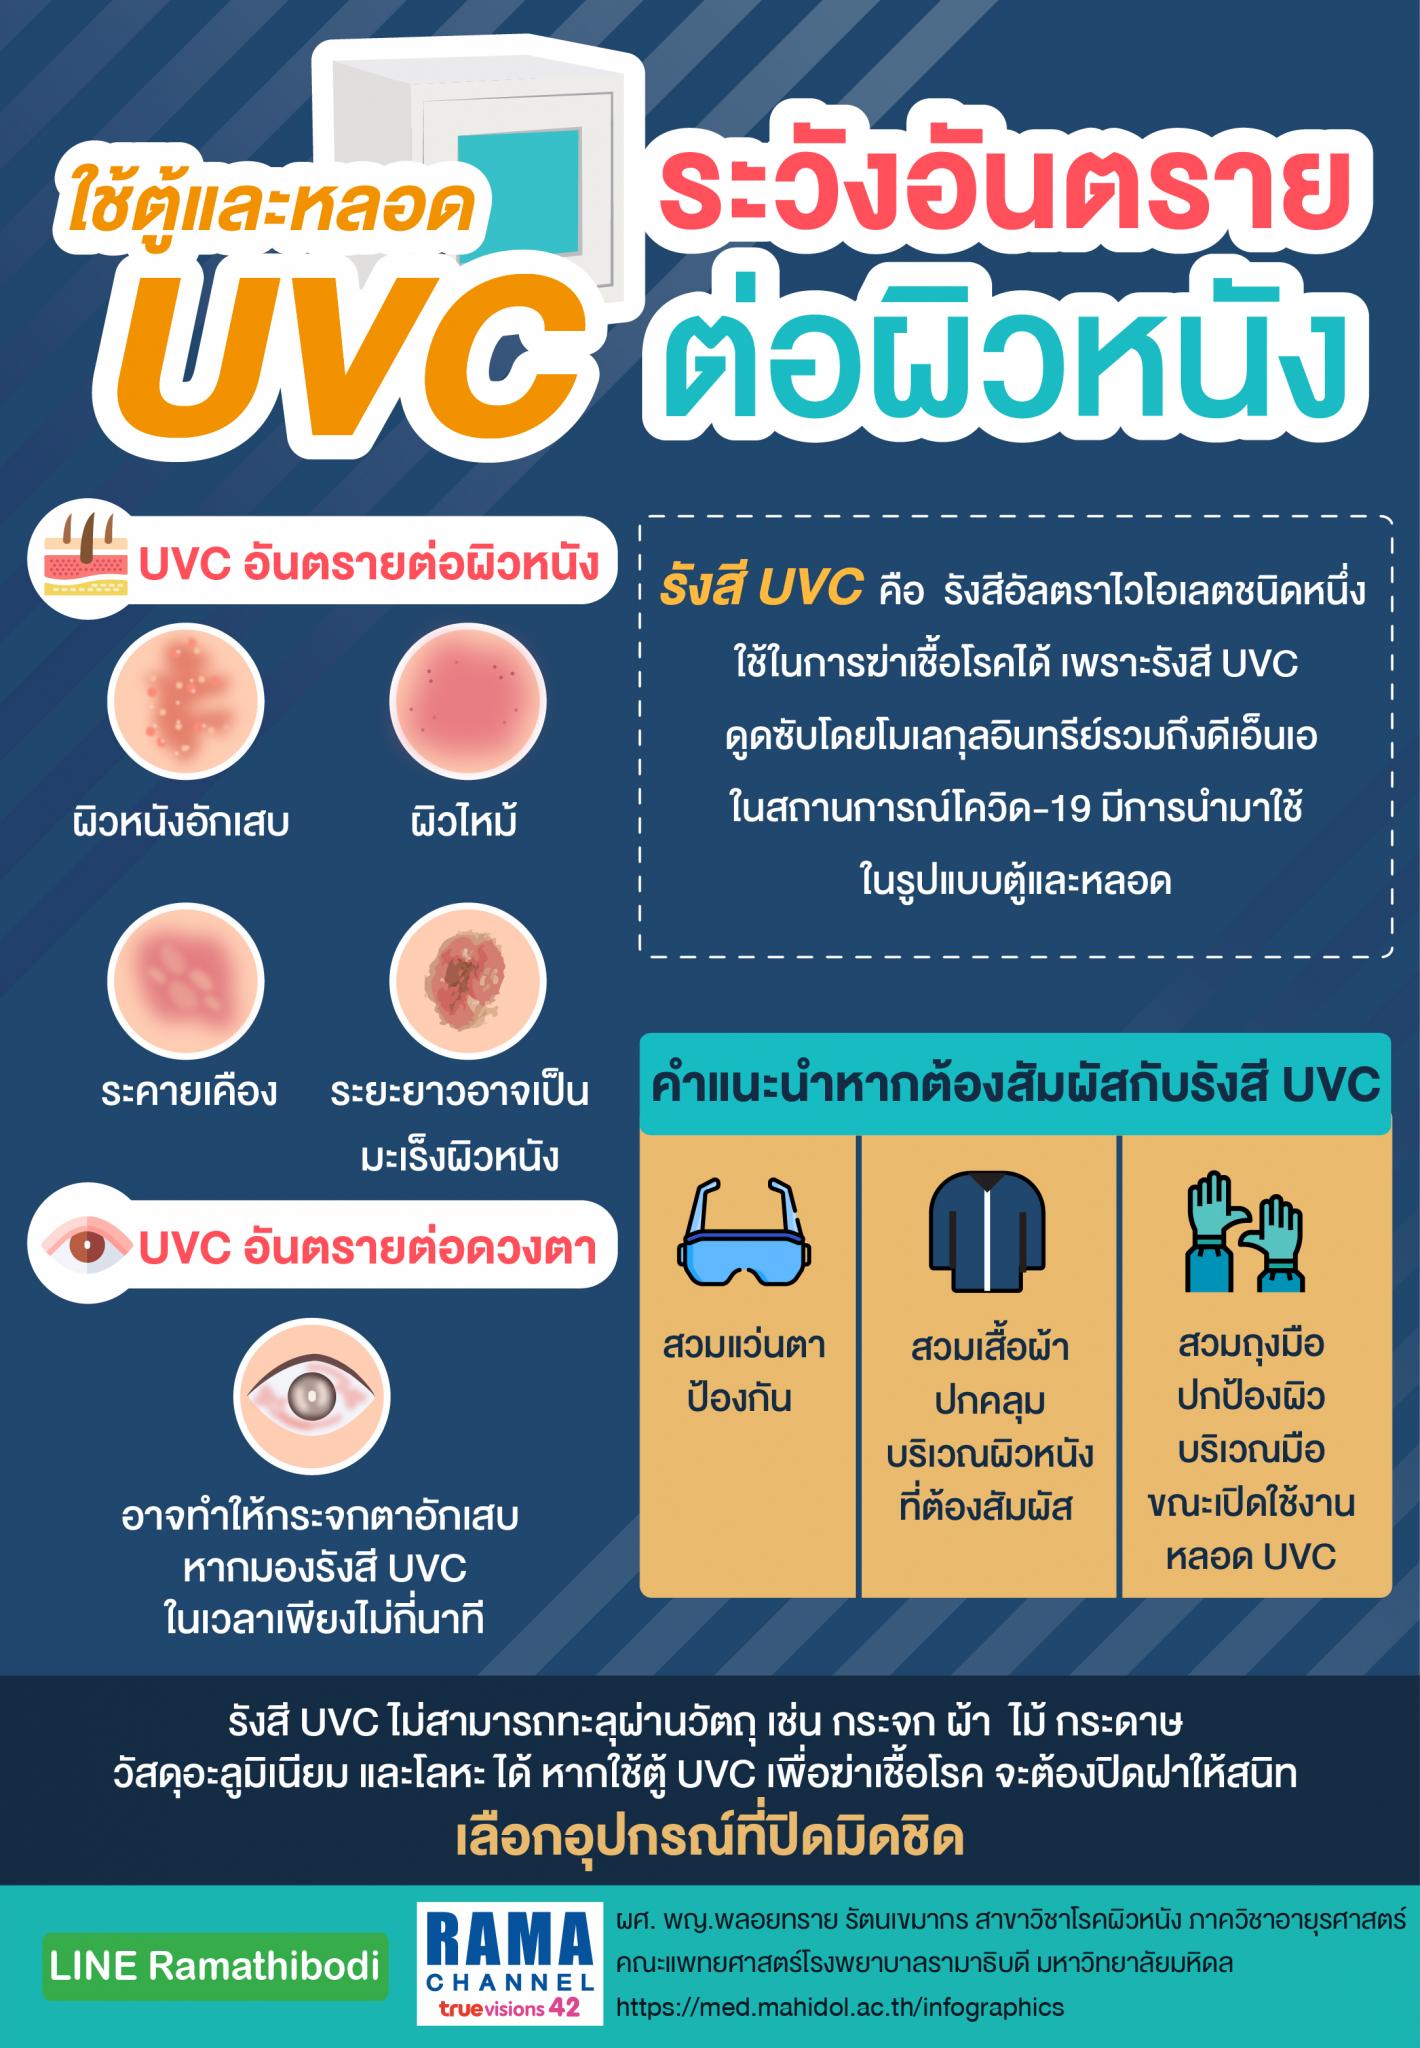 ใช้ตู้และหลอด UVC ระวังอันตรายต่อผิวหนัง